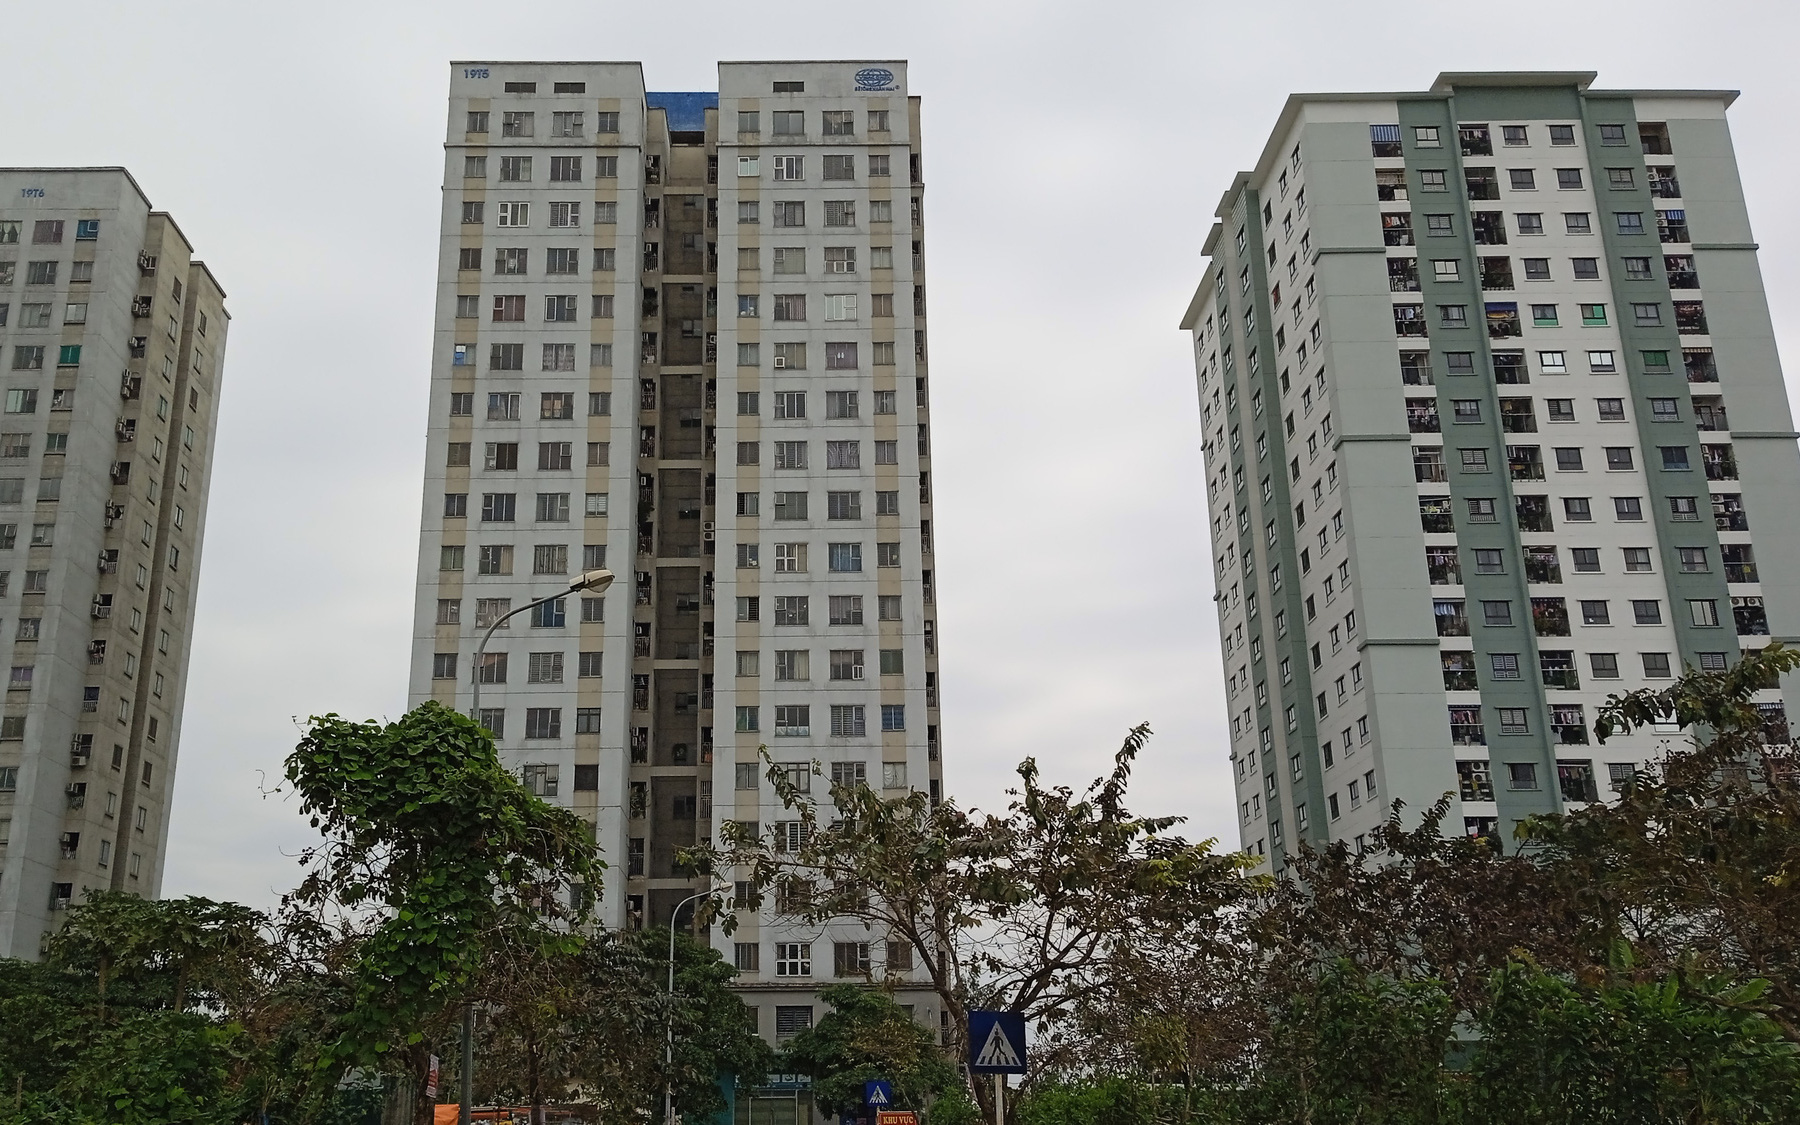 Vụ chung cư cho người thu nhập thấp vừa bàn giao đã bị phản đối ở Hà Nội: CĐT ra "tối hậu thư" buộc cư dân ký hợp đồng điện ngoài ý muốn, nếu không sẽ cắt điện